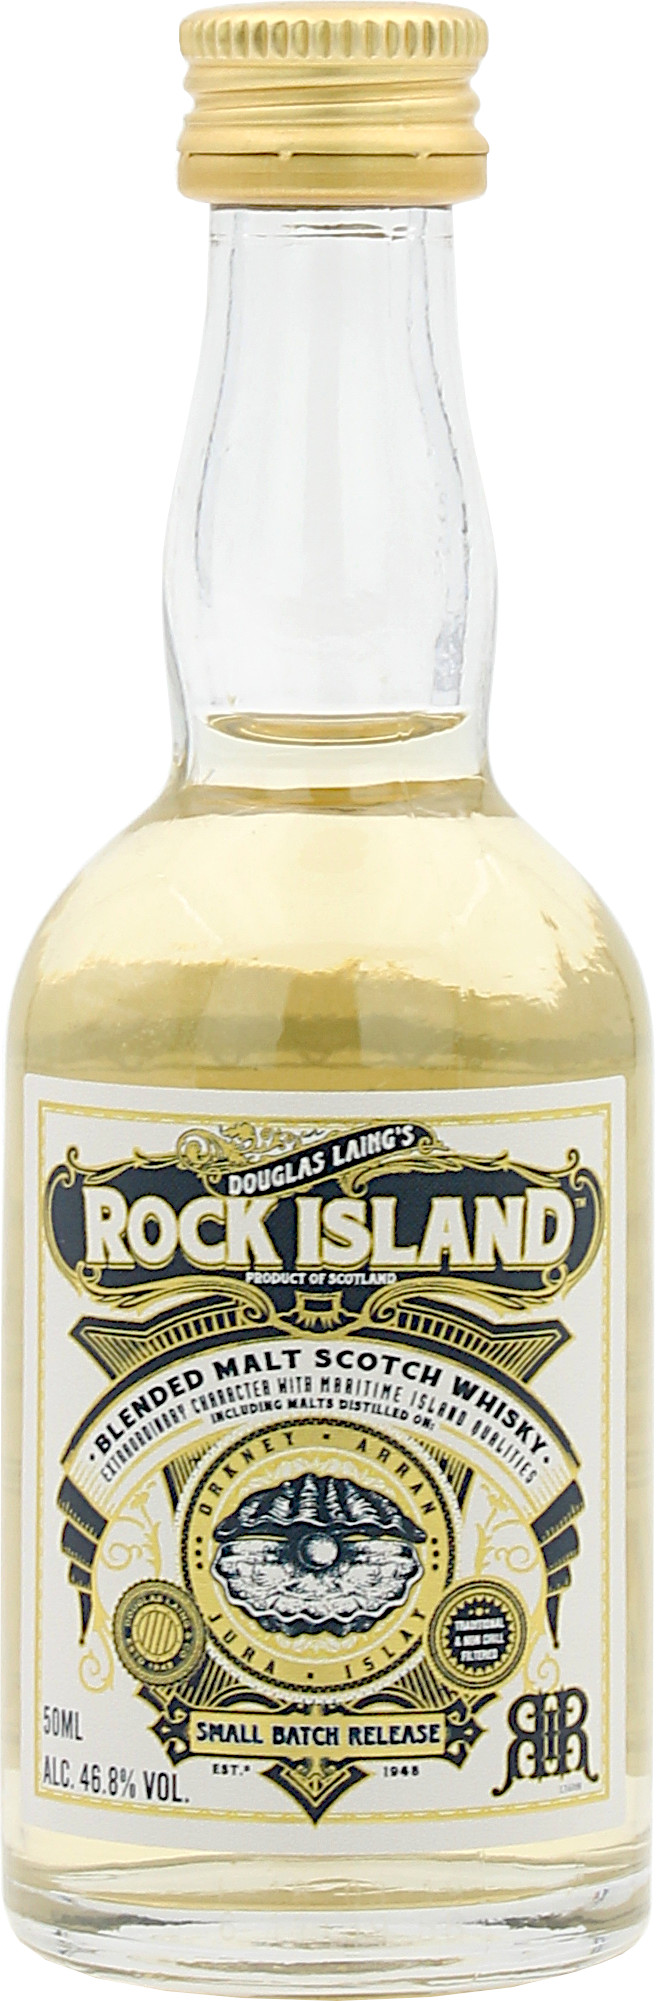 Miniatur Rock Island 46.8% 0,05l